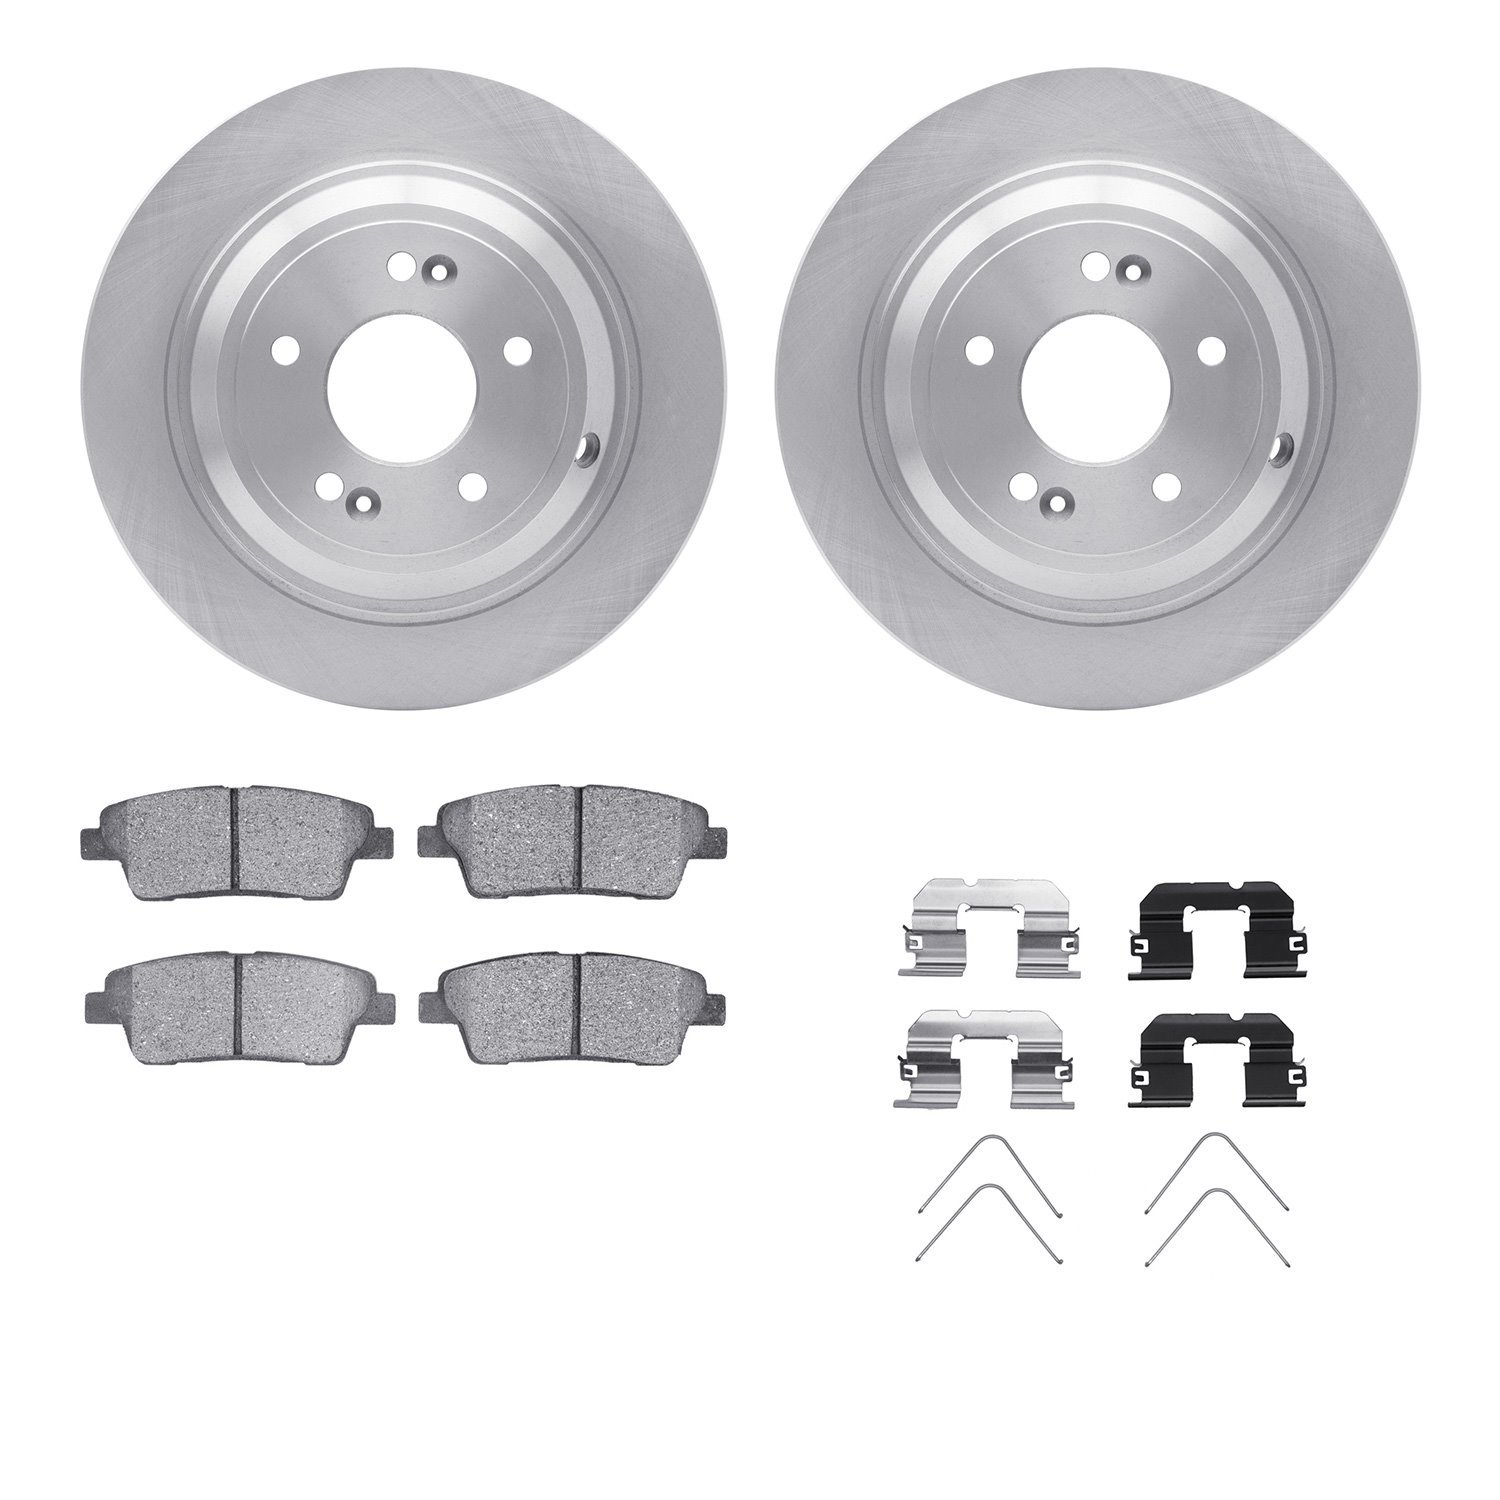 6312-03103 Brake Rotors with 3000-Series Ceramic Brake Pads Kit with Hardware, 2018-2020 Kia/Hyundai/Genesis, Position: Rear